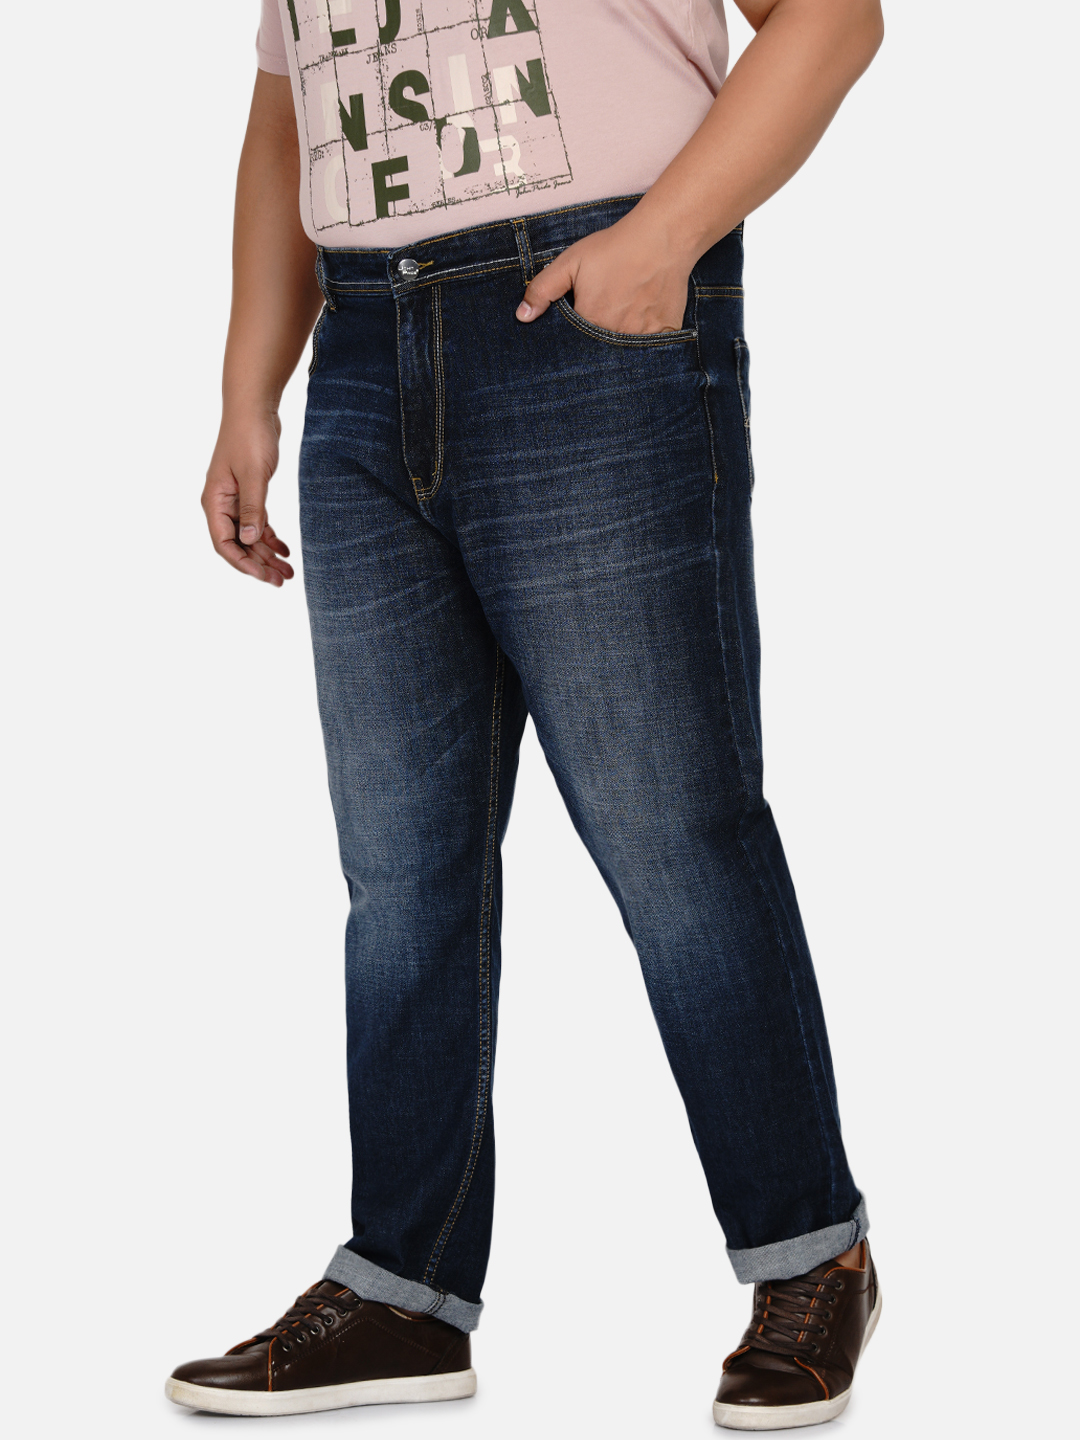 affordables/jeans/EJPJ2030/ejpj2030-4.jpg